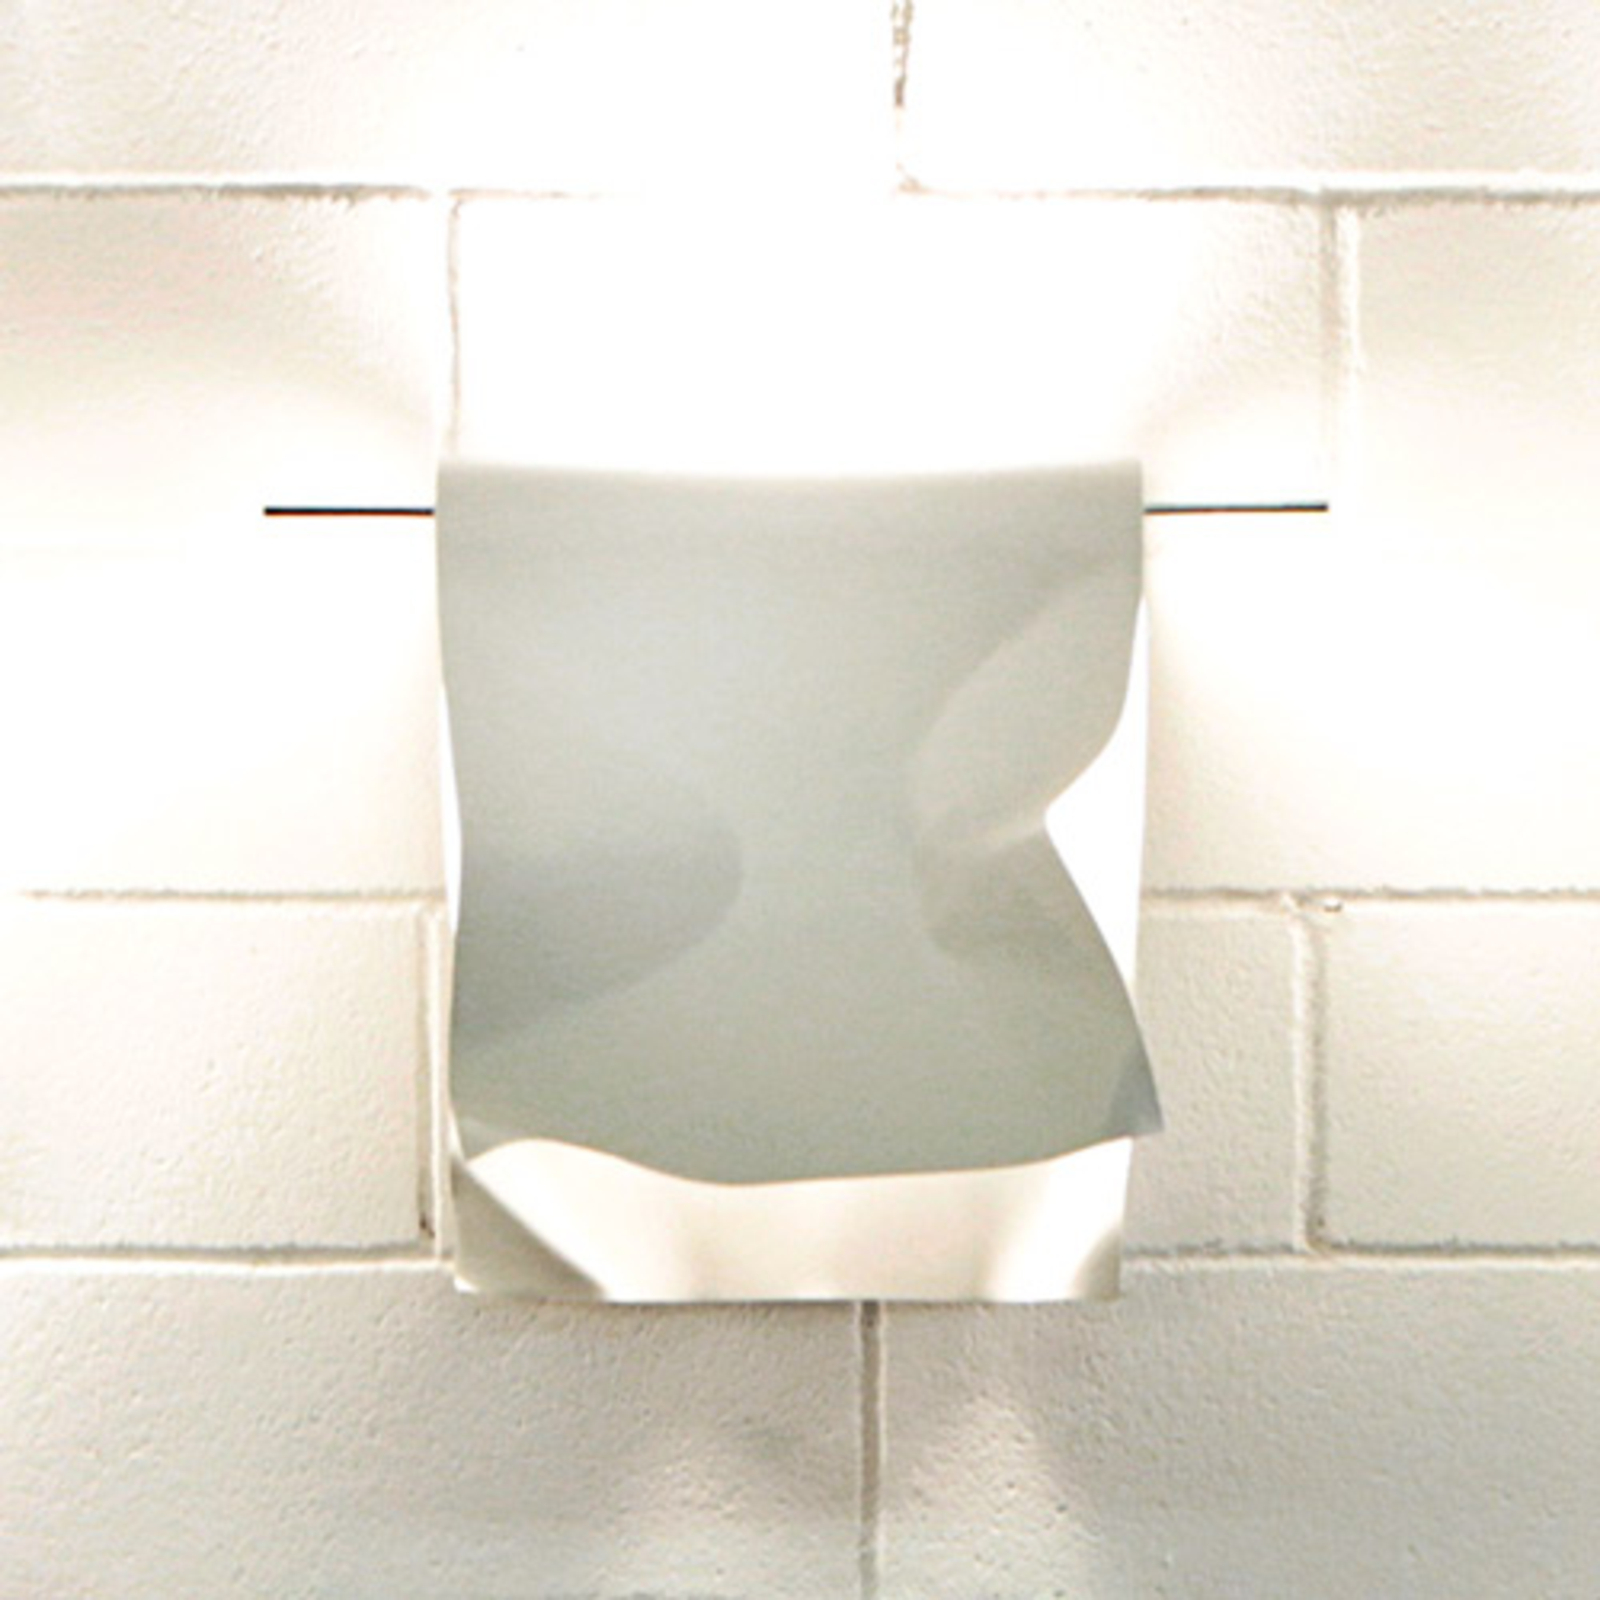 Knikerboker Stendimi - bílé nástěnné LED svítidlo 40 cm